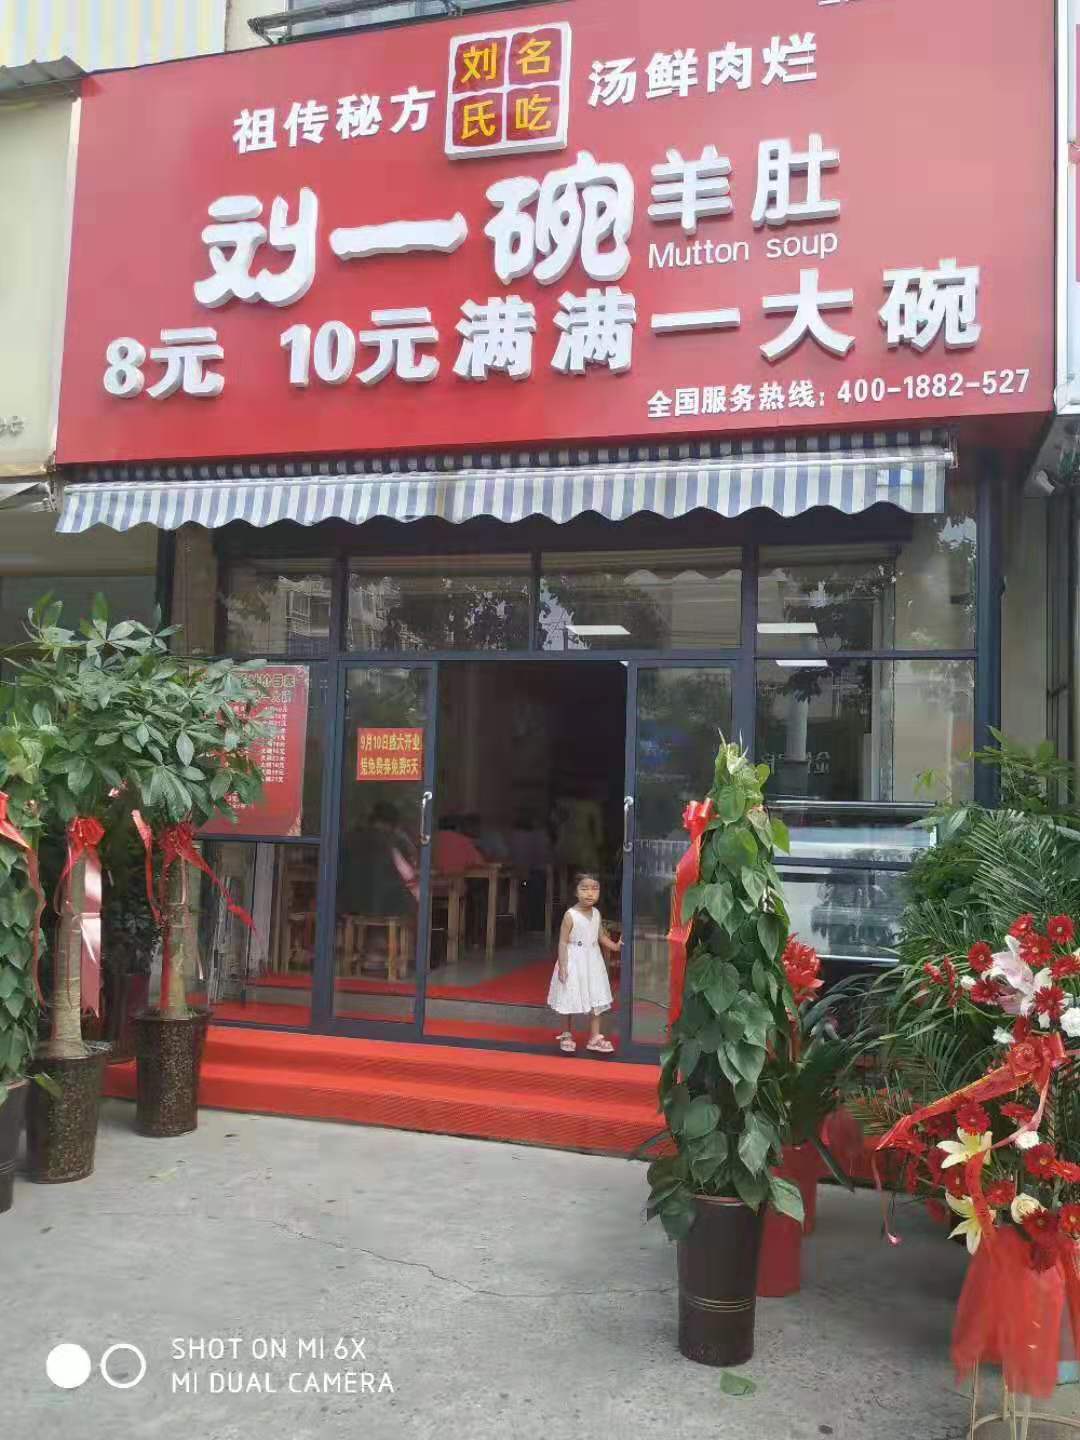 山东刘一碗安徽蚌埠店于2019年9月10日盛大开业，祝开业大吉